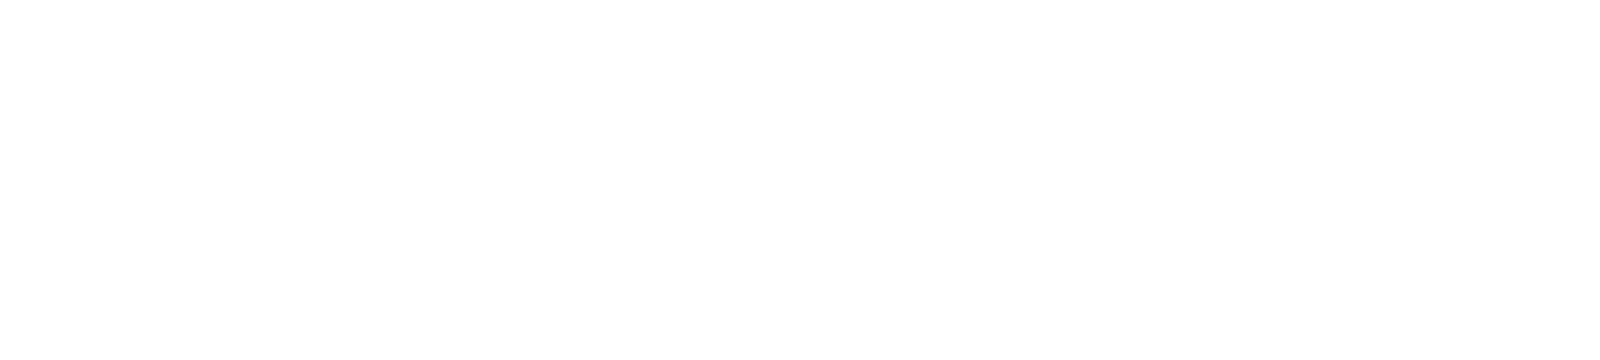 鳥取県新型コロナ関連支援策